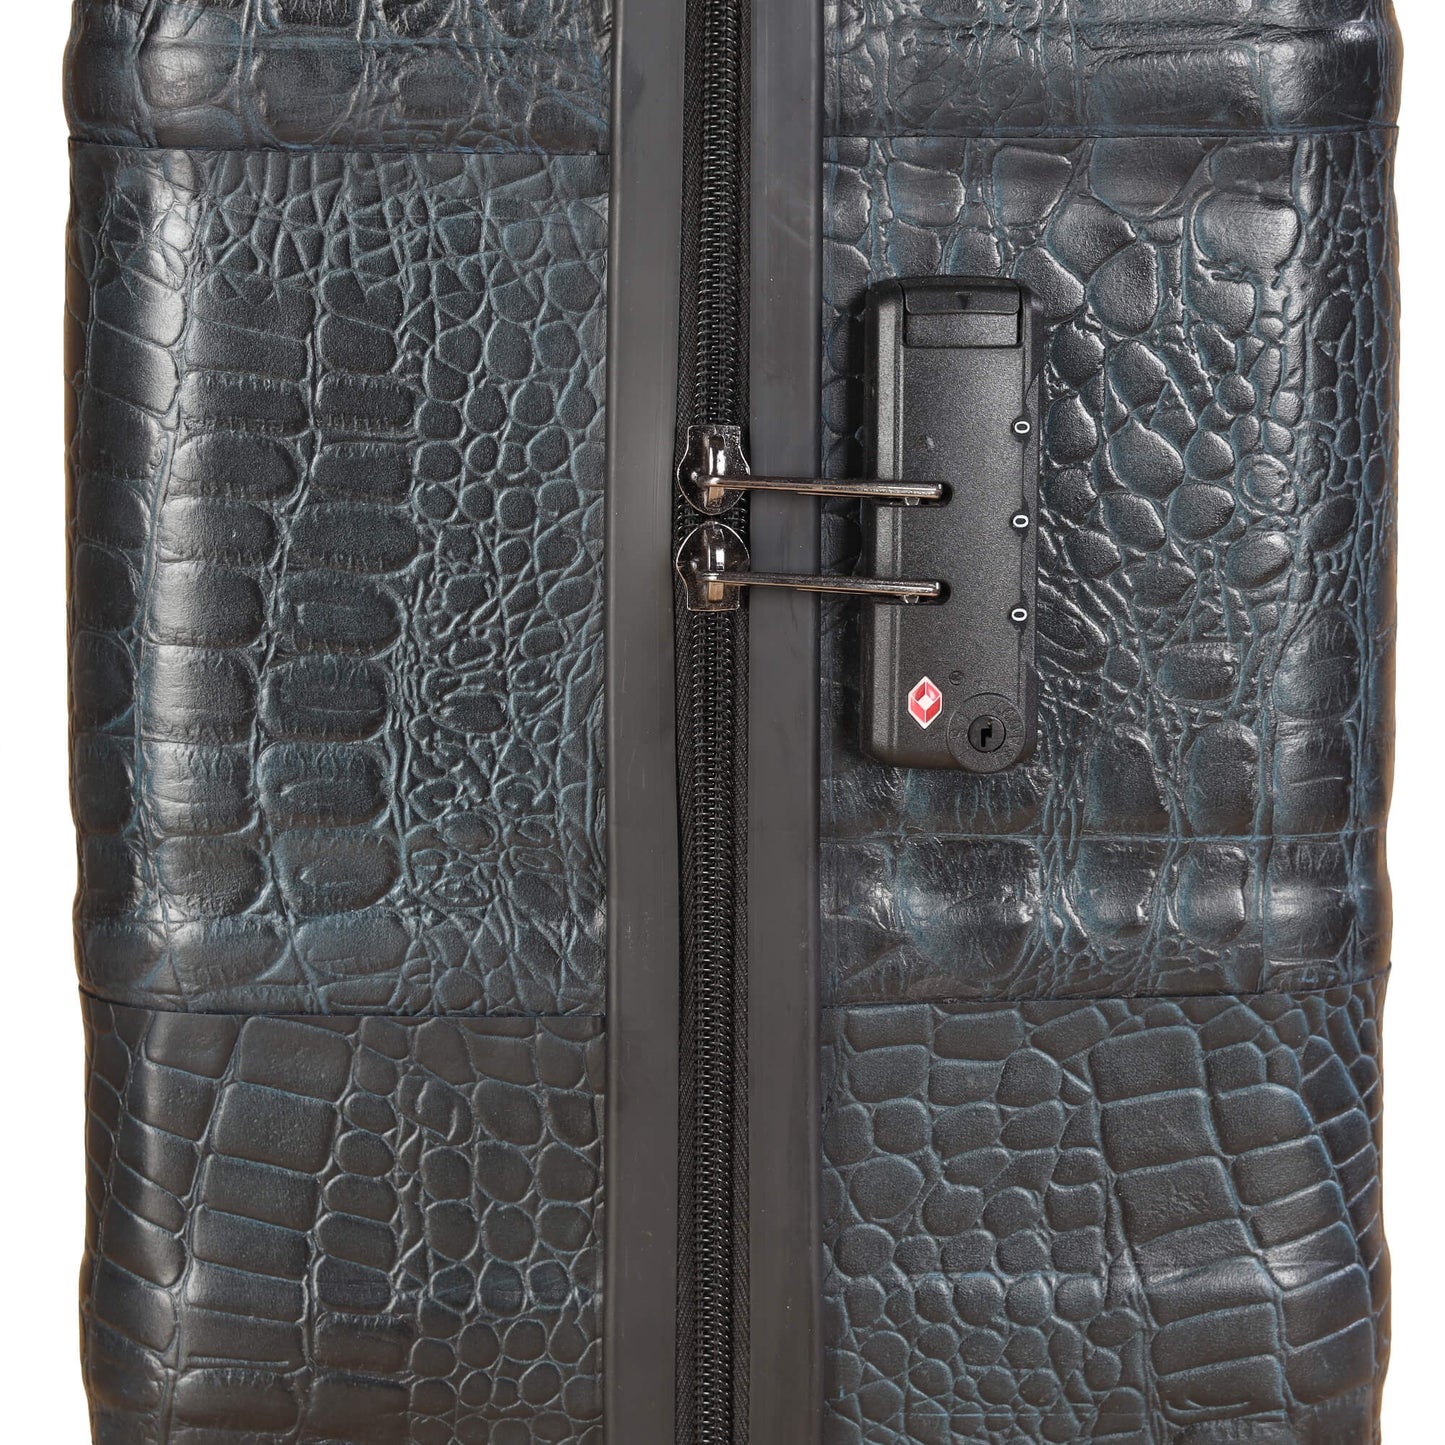 Trolley Bag Premium Quality Genuine Croco Leather Blue